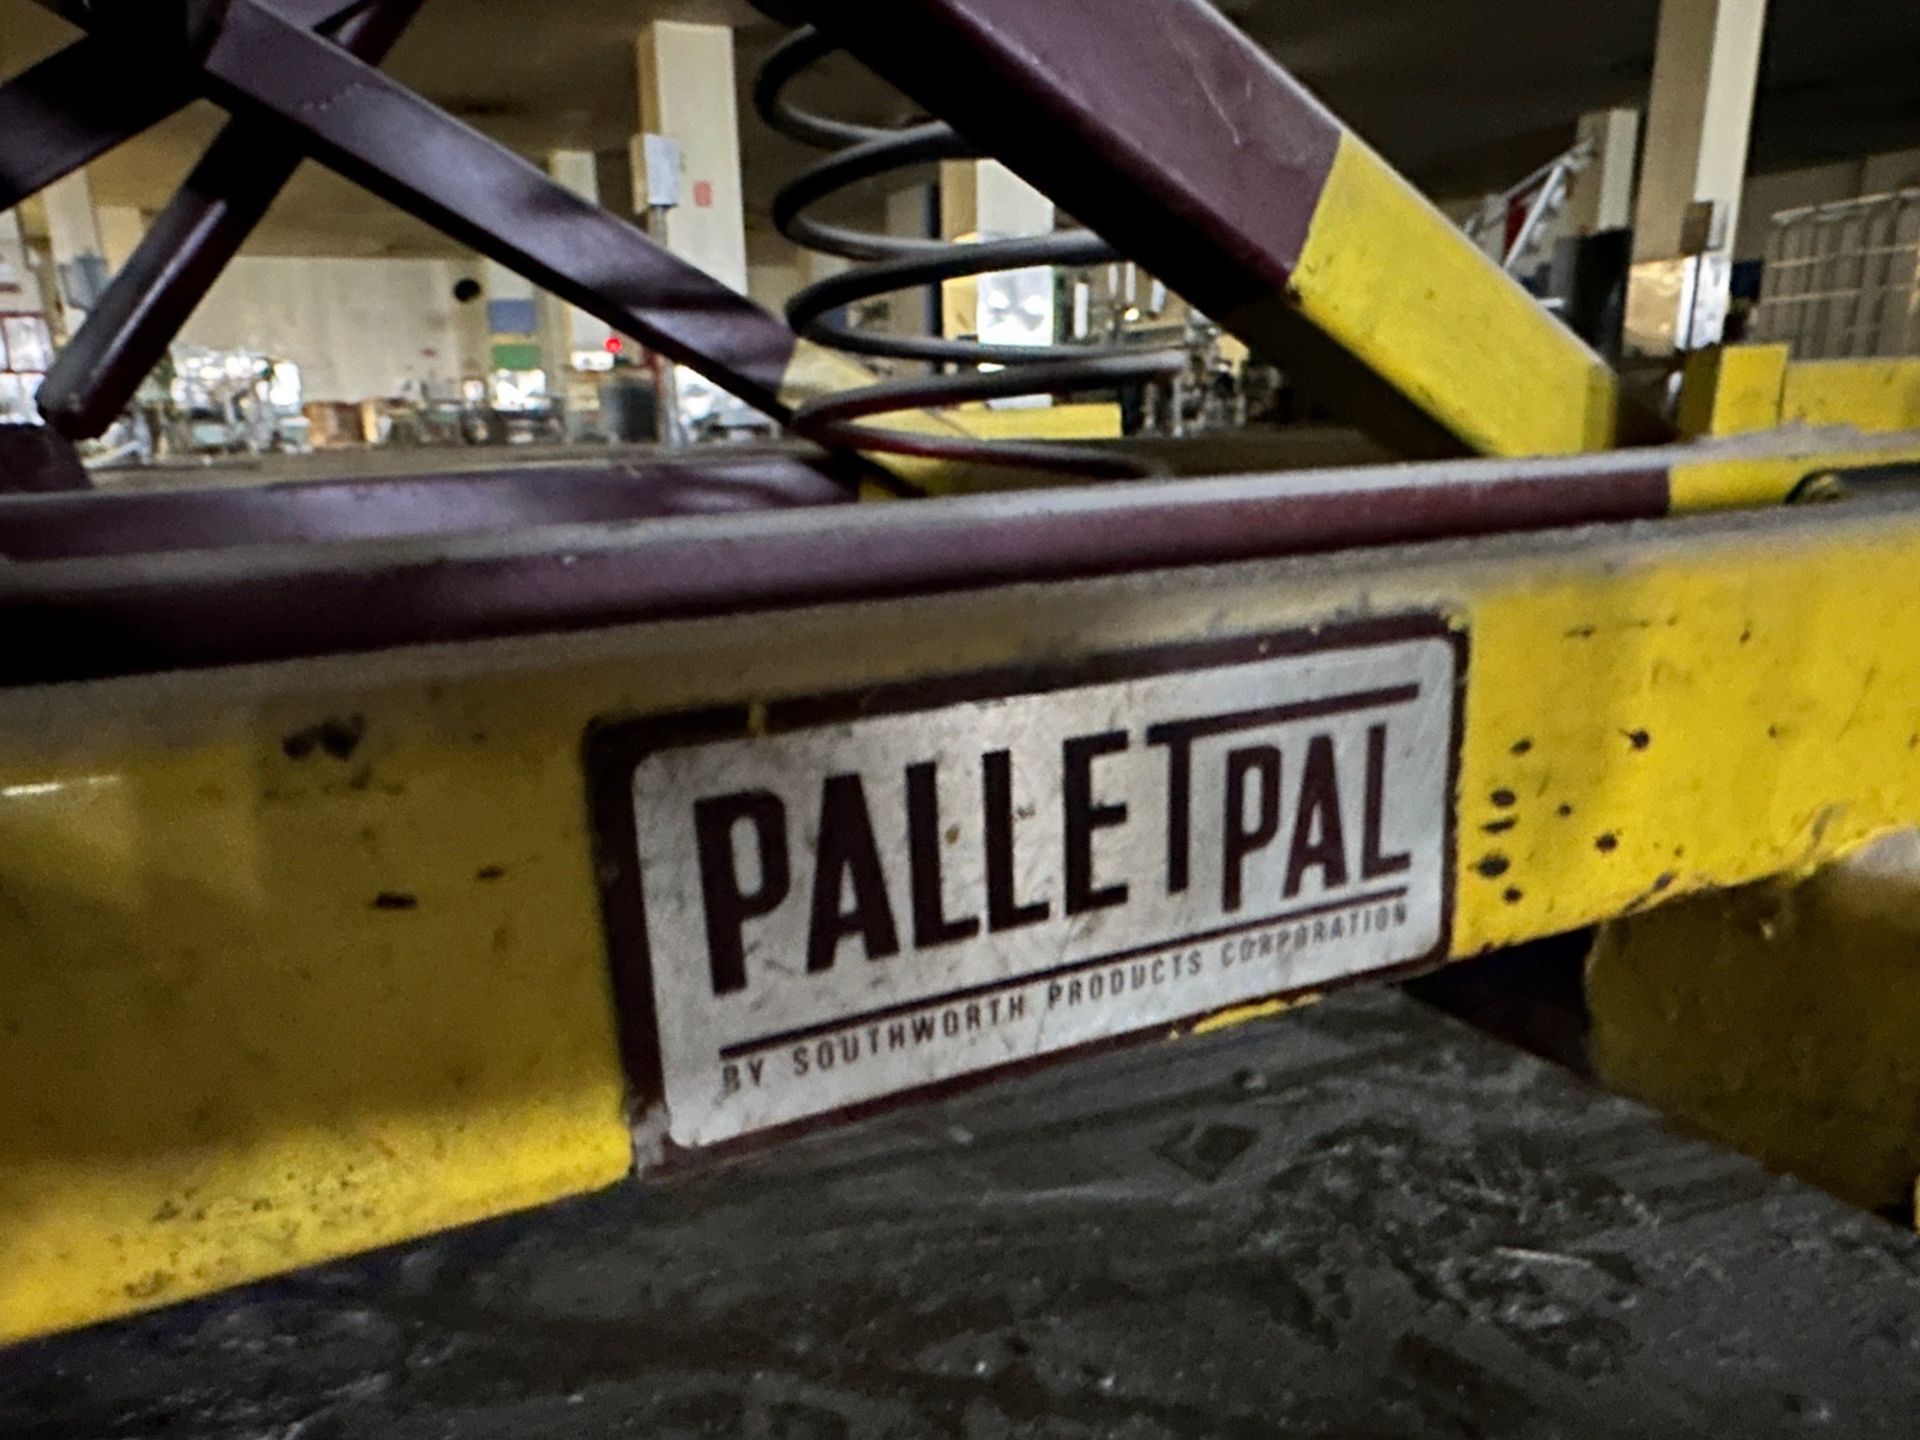 Southworth Pallet Pal Scissor Lift / Pallet Platform | Rig Fee $100 - Image 3 of 3